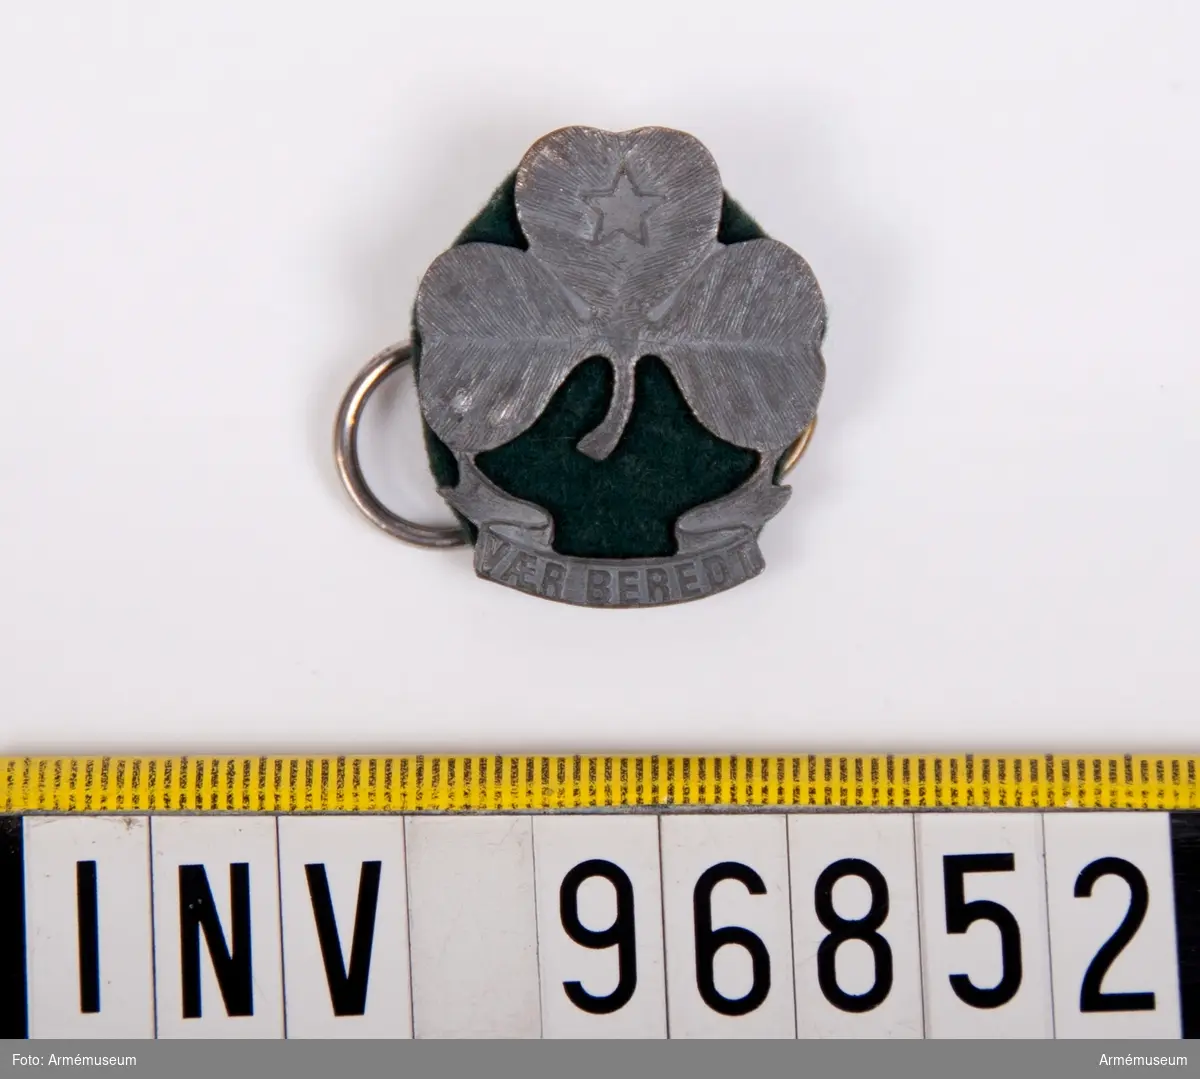 Ett märke i metall med formen av ett treklöver mot bakgrund av en liten filtbit i grönt tyg och på baksidan två metallringar fastsatta.